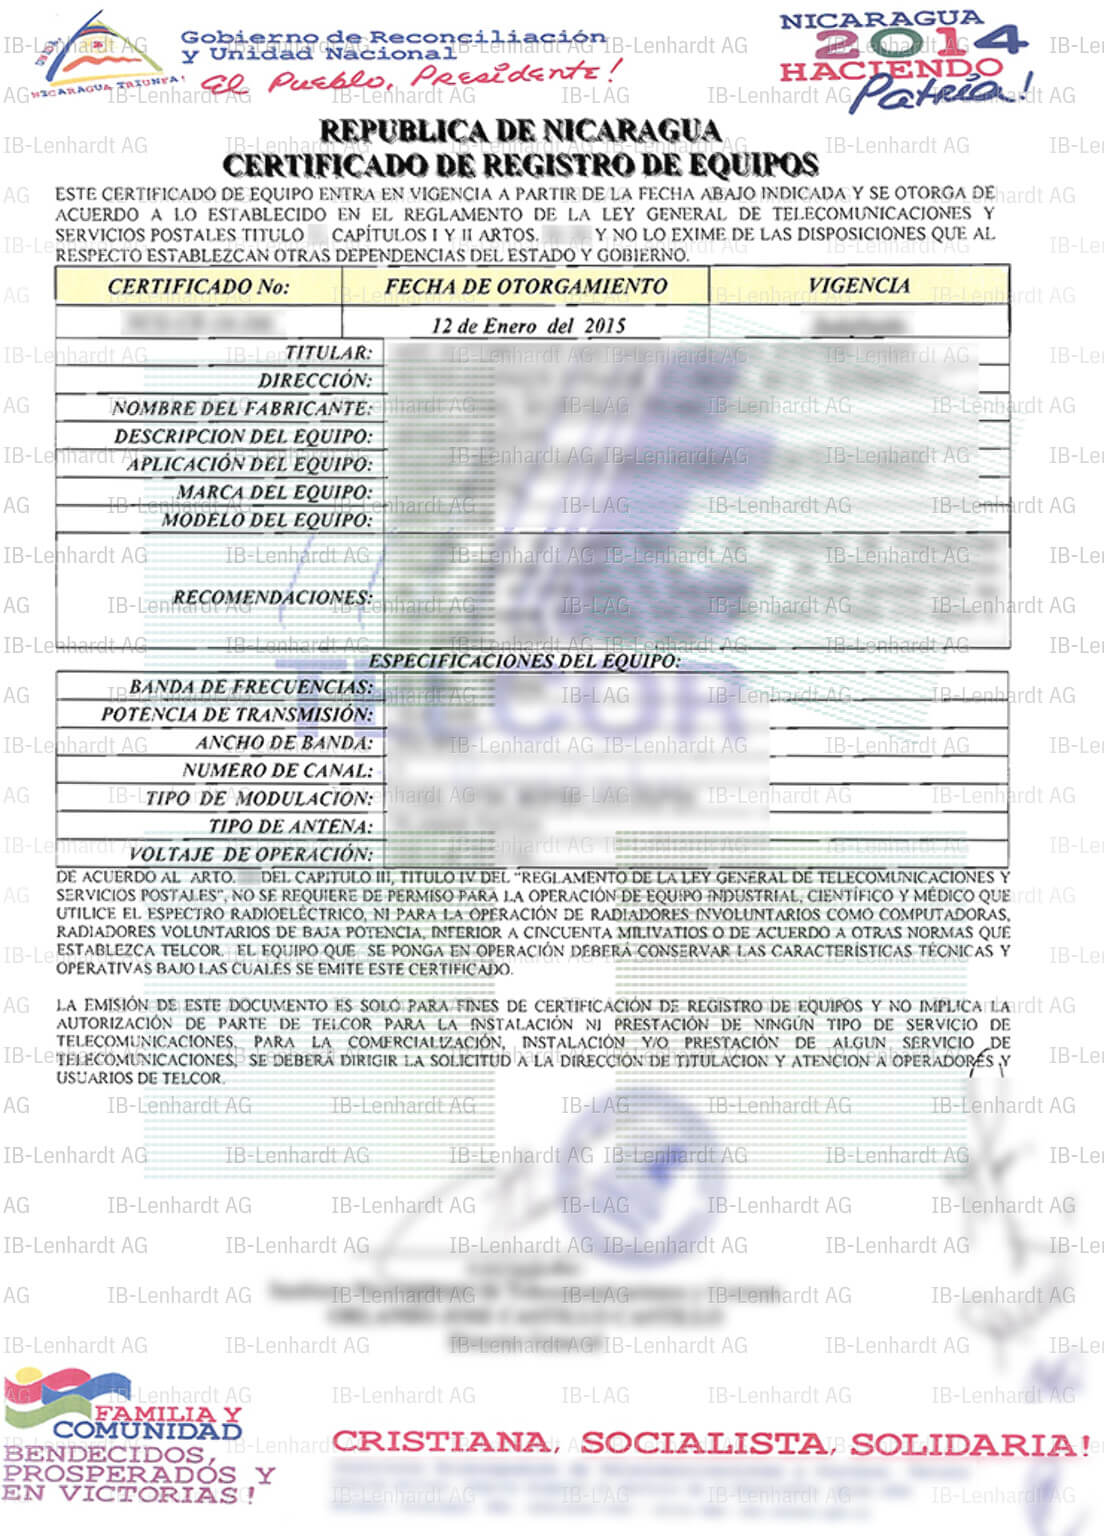 認証書の例 ニカラグア